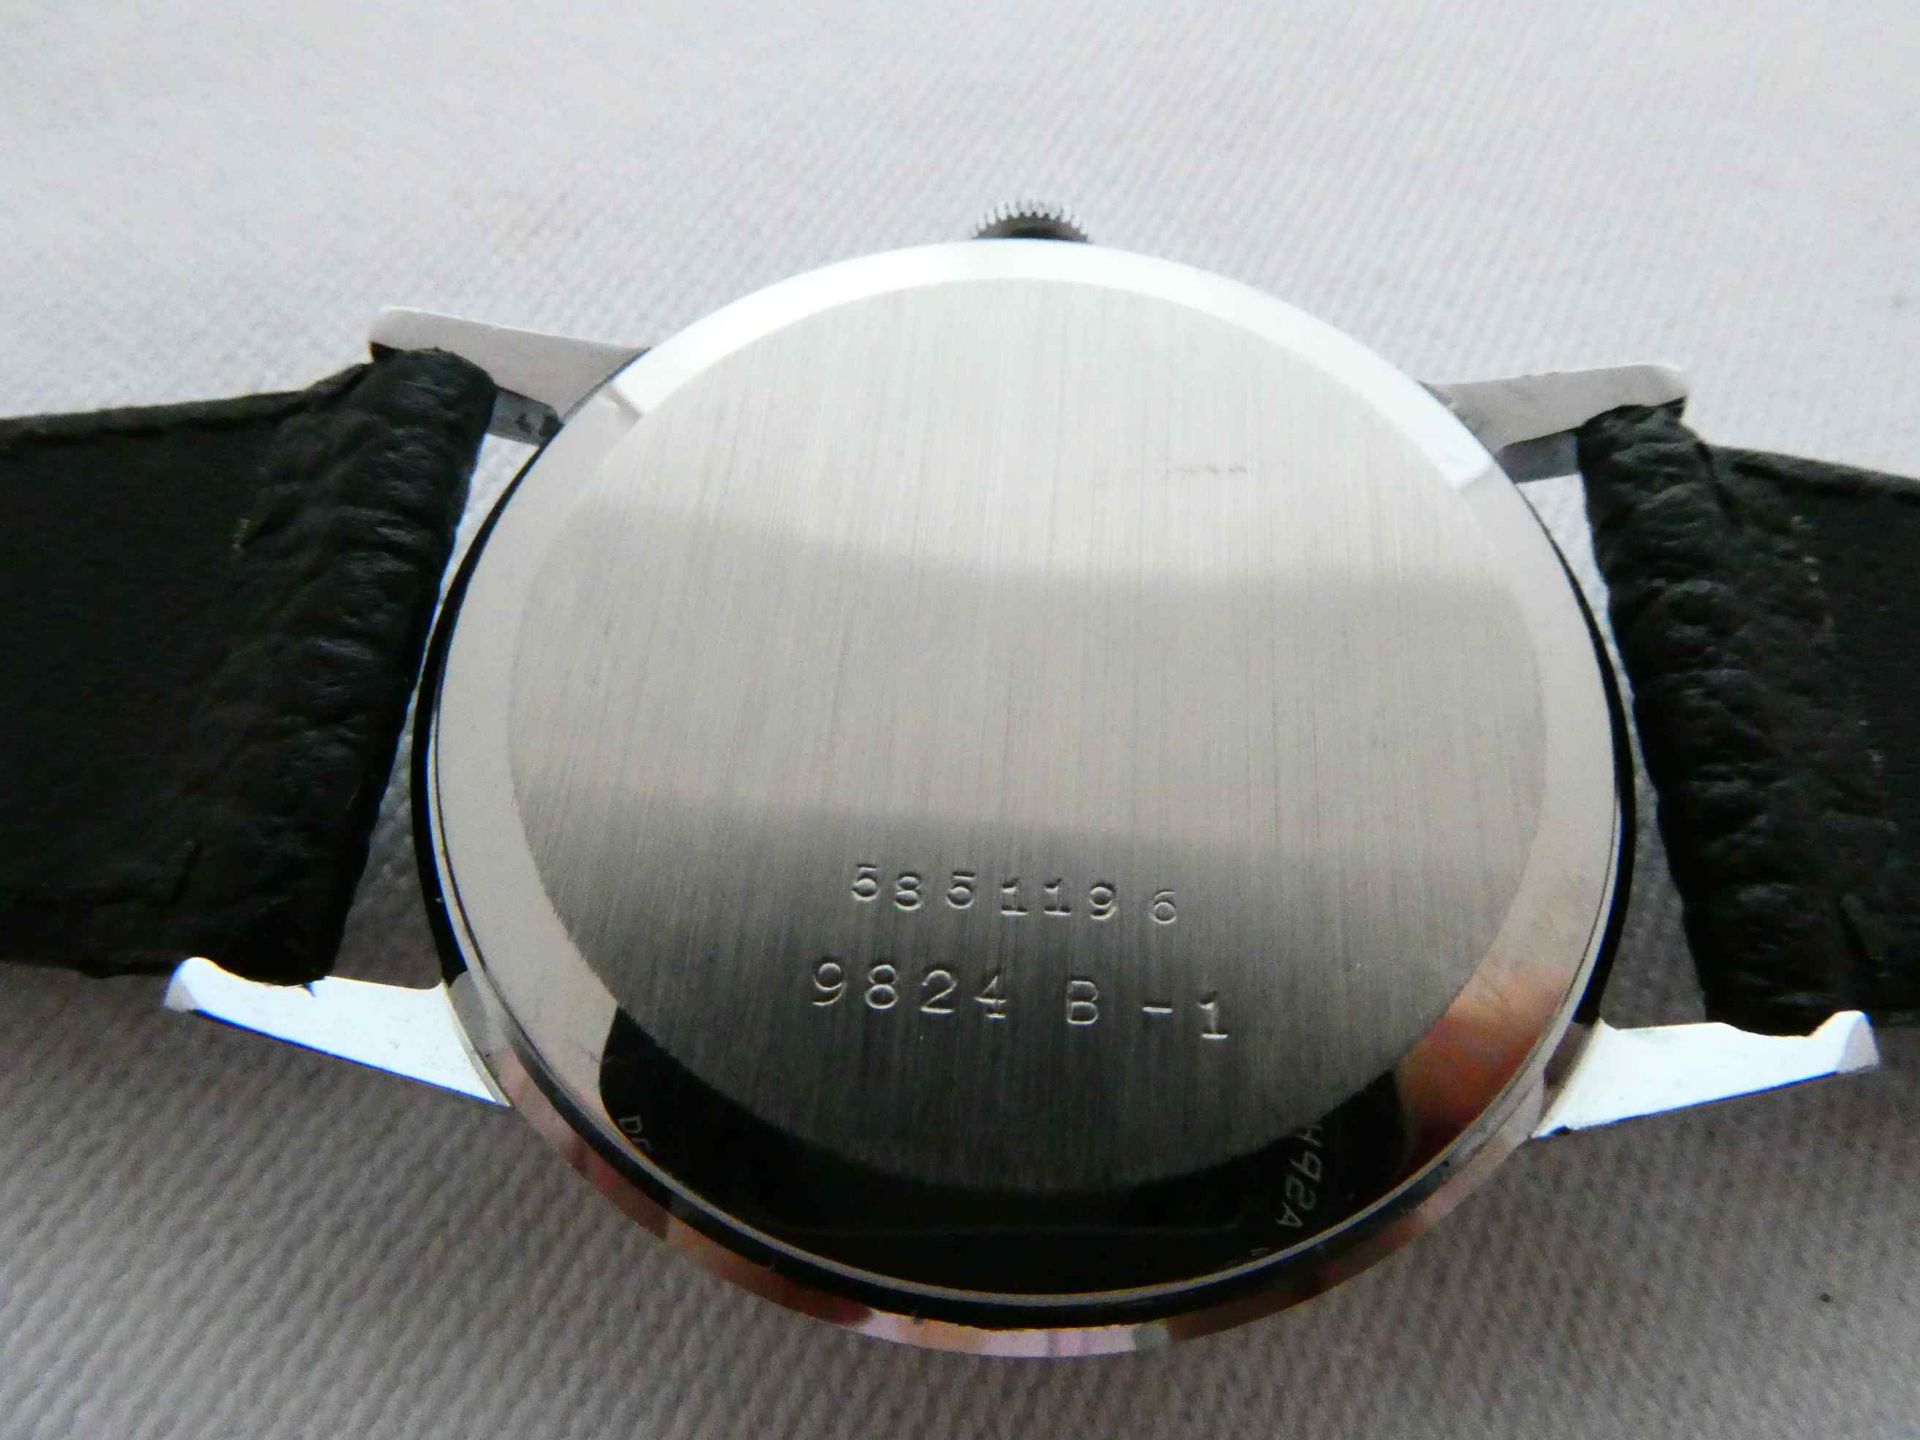 Doxa Armbanduhr - Bild 4 aus 5